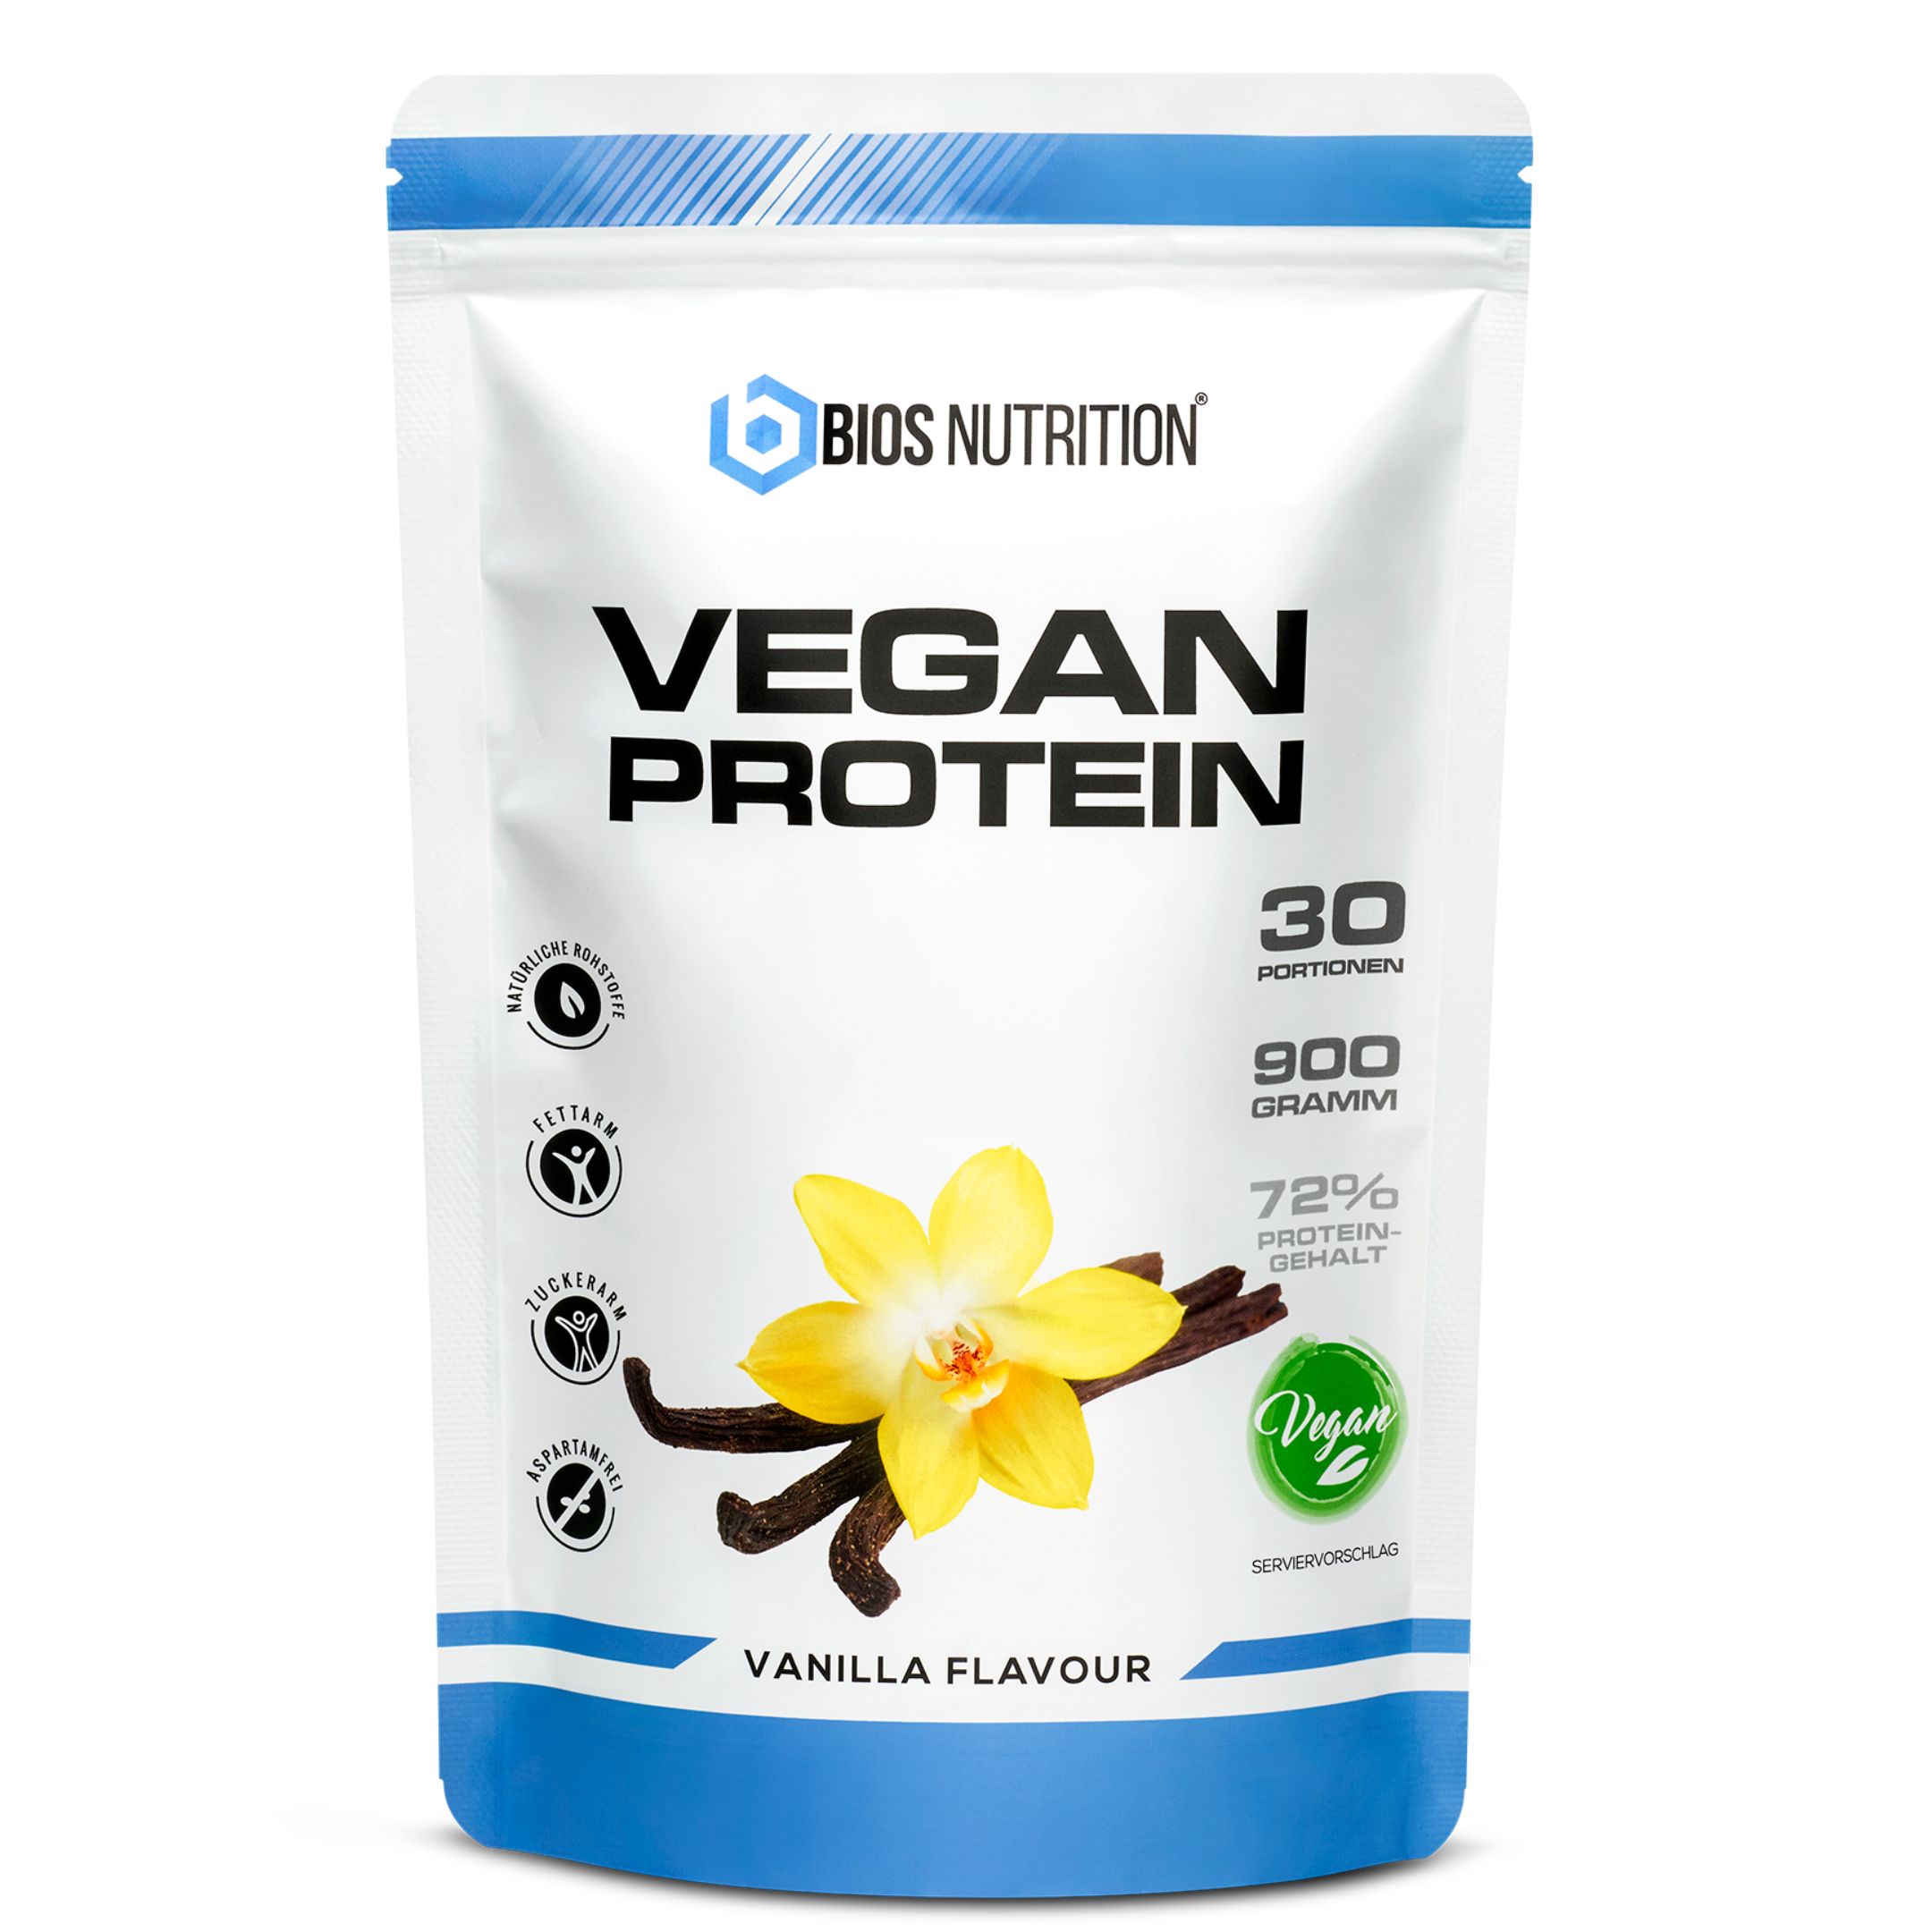 Bios Nutrition Vegan Protein - pflanzliches Protein ohne Laktose & ohne Soja